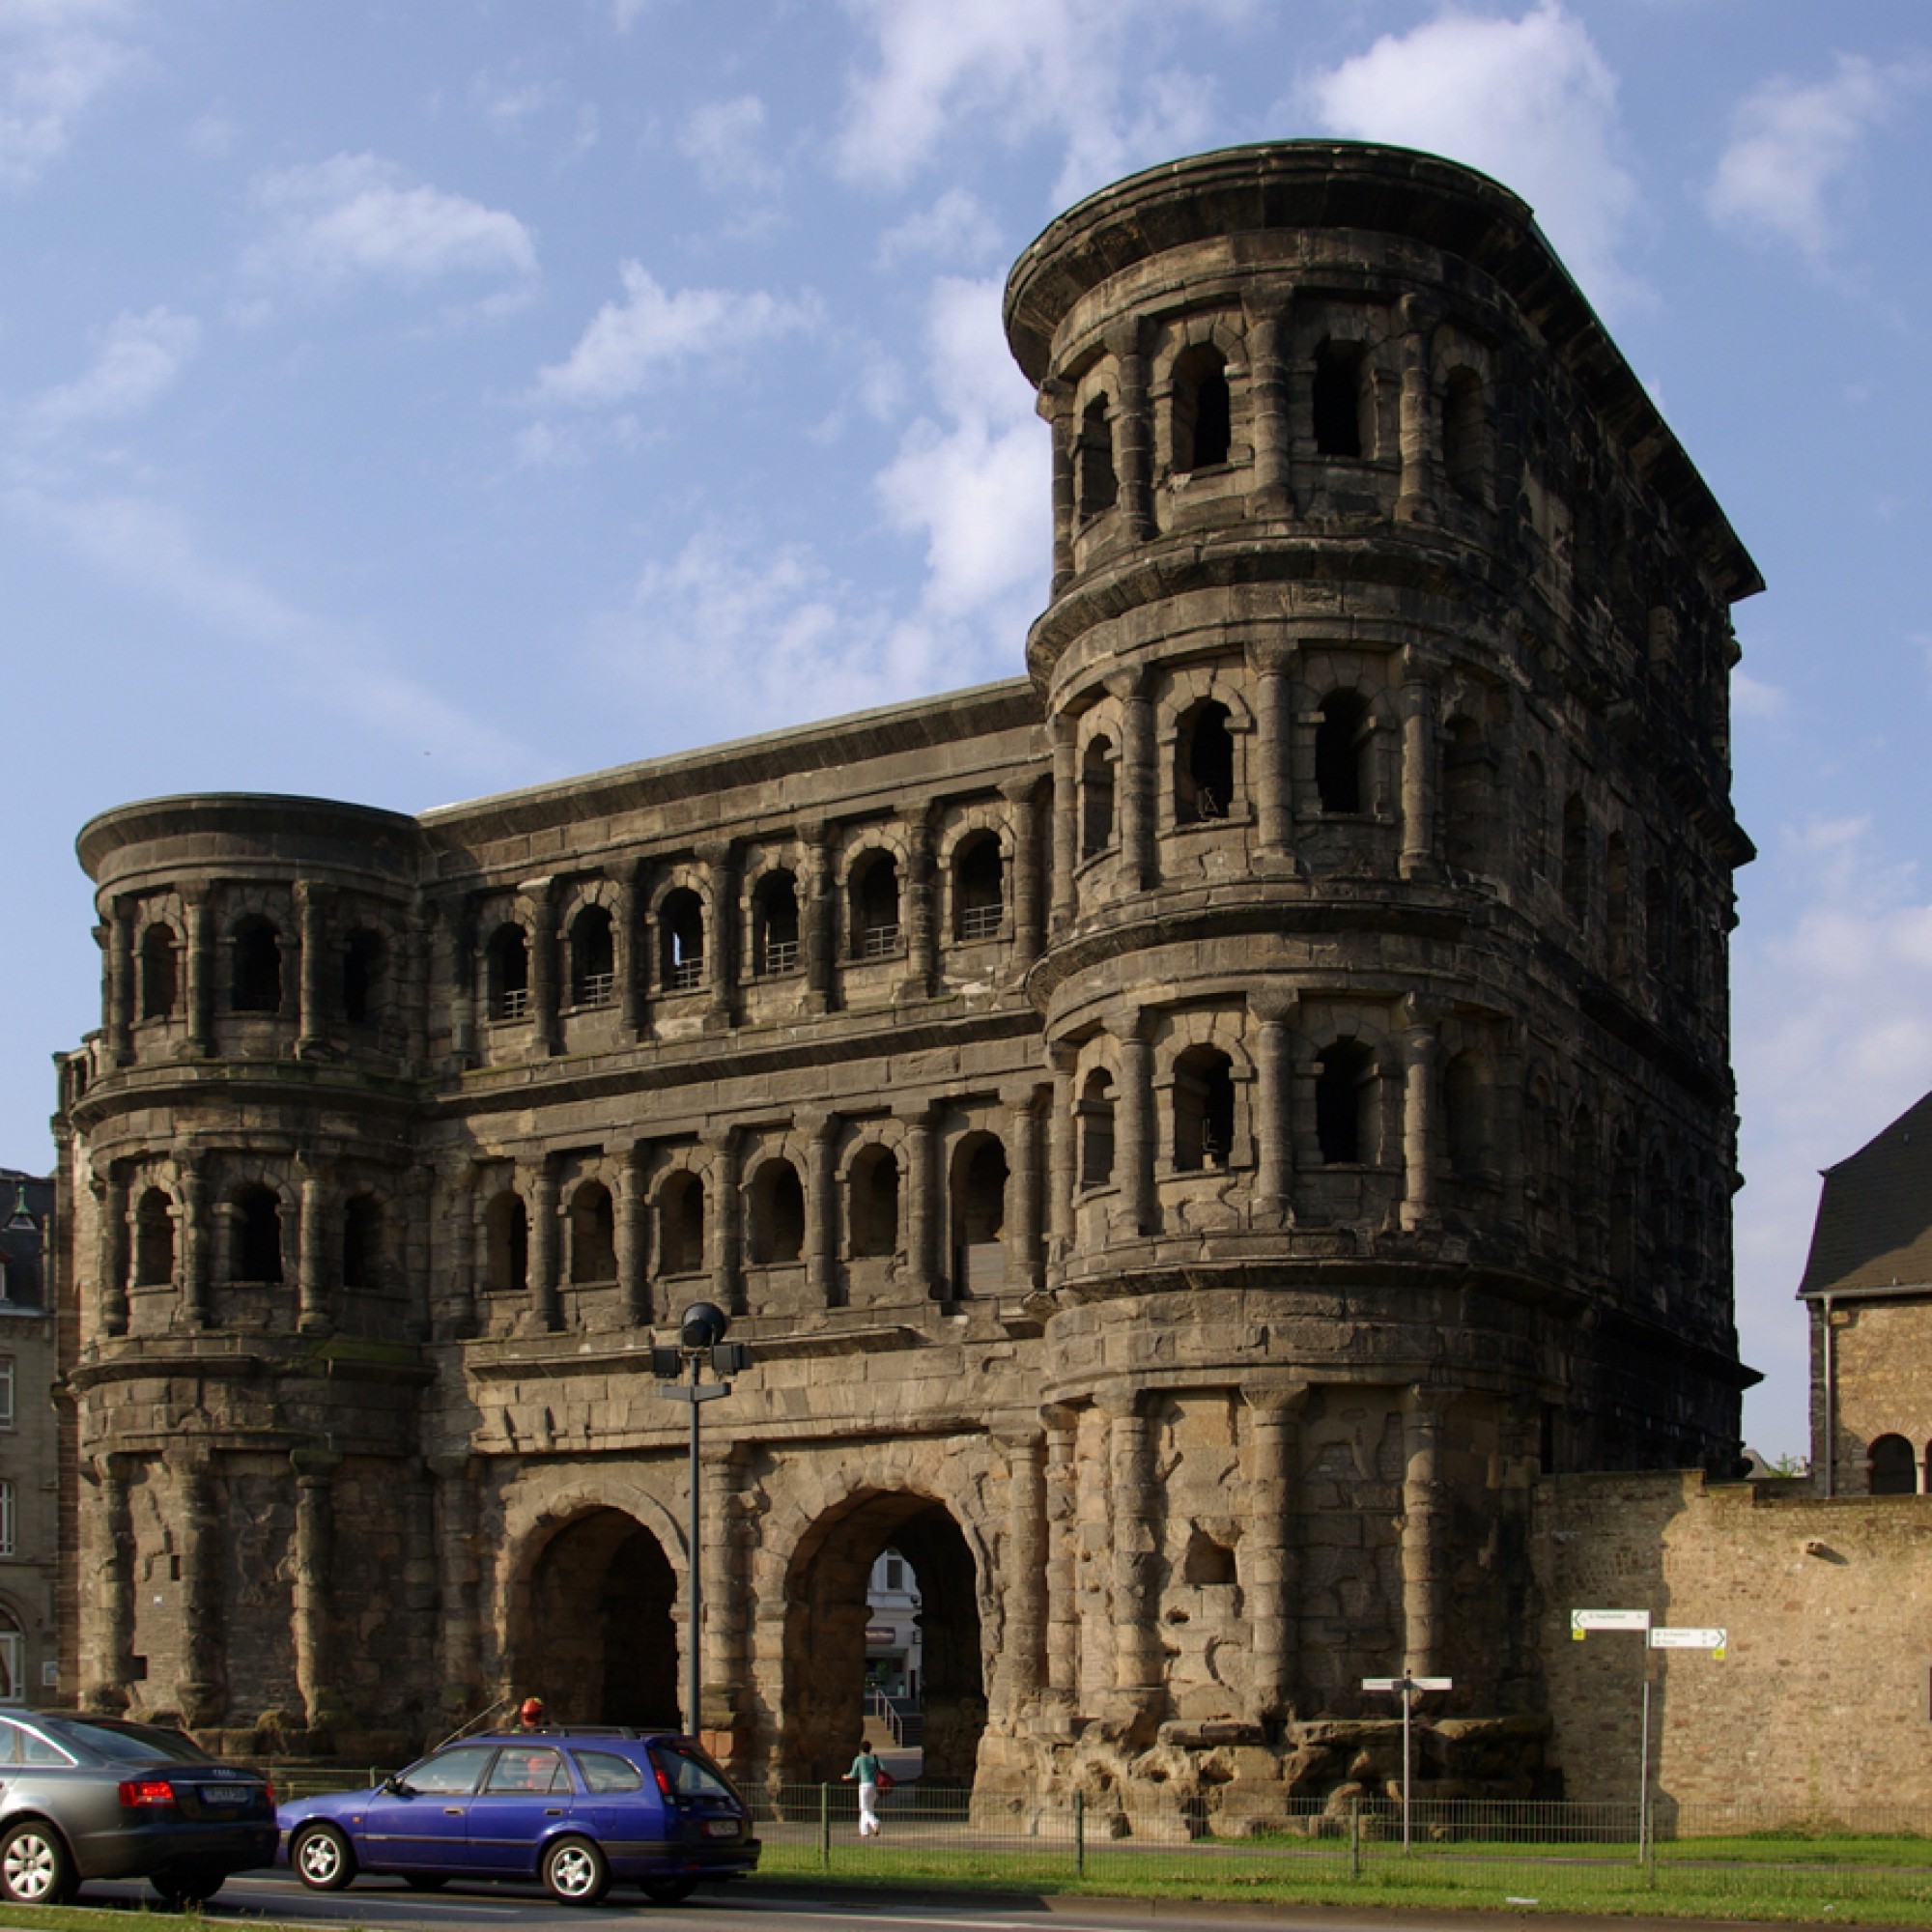 Seit 1848 Jahren steht die Porta Nigra im heutigen Trier. Sie wurde von den Römern wahrscheinlich nicht als Wehranlage, sondern als Repräsentationsobjekt angelegt. 